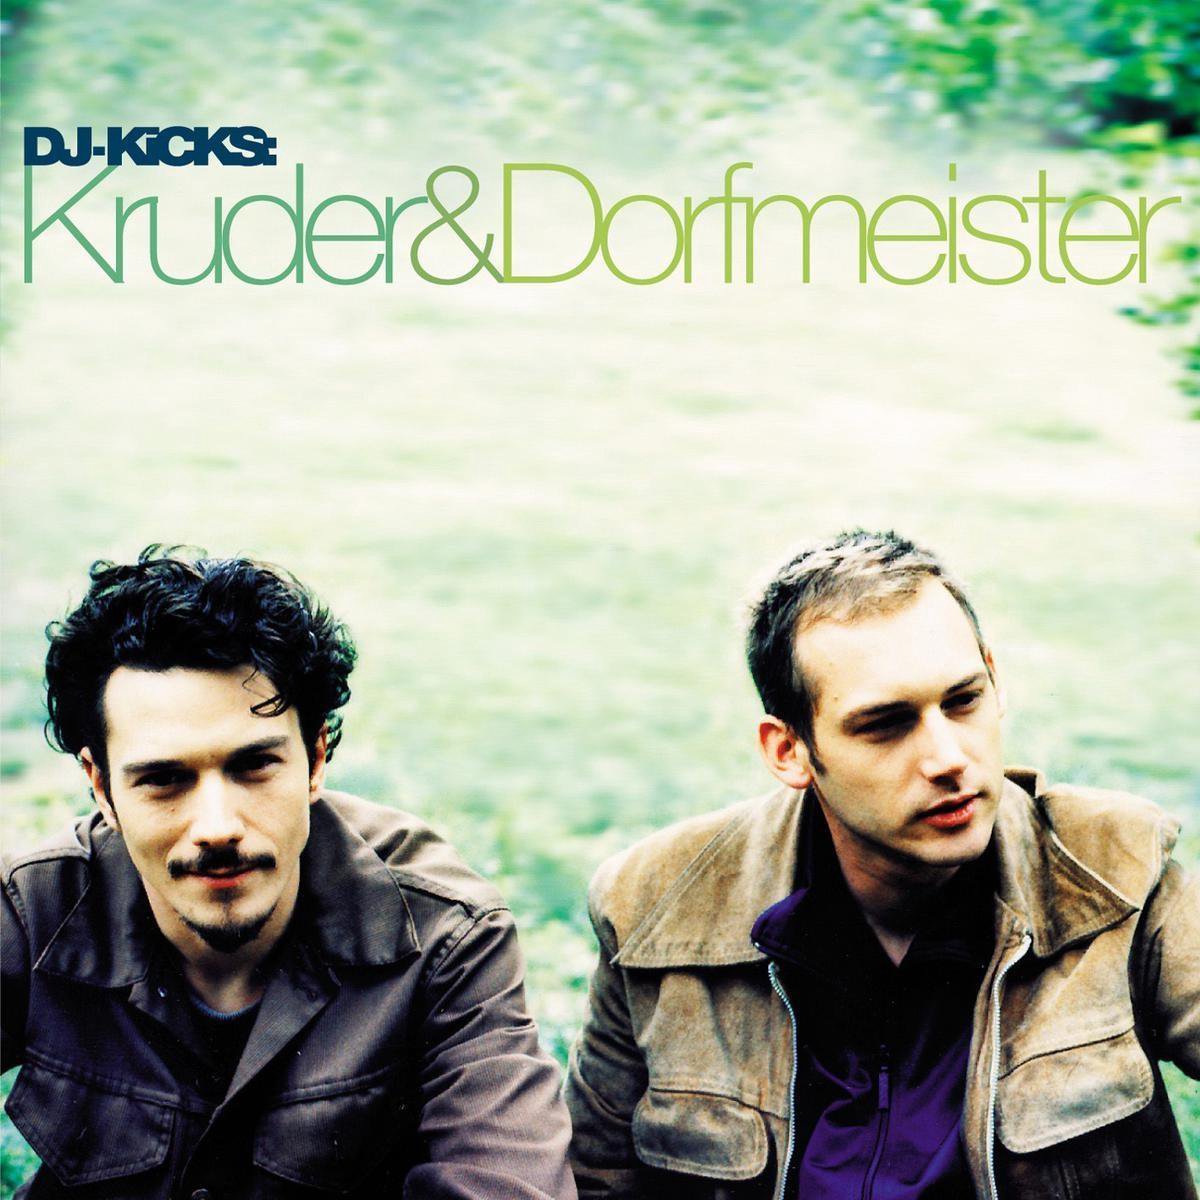 Kruder & Dorfmeister DJ-Kicks - Kruder & Dorfmeister